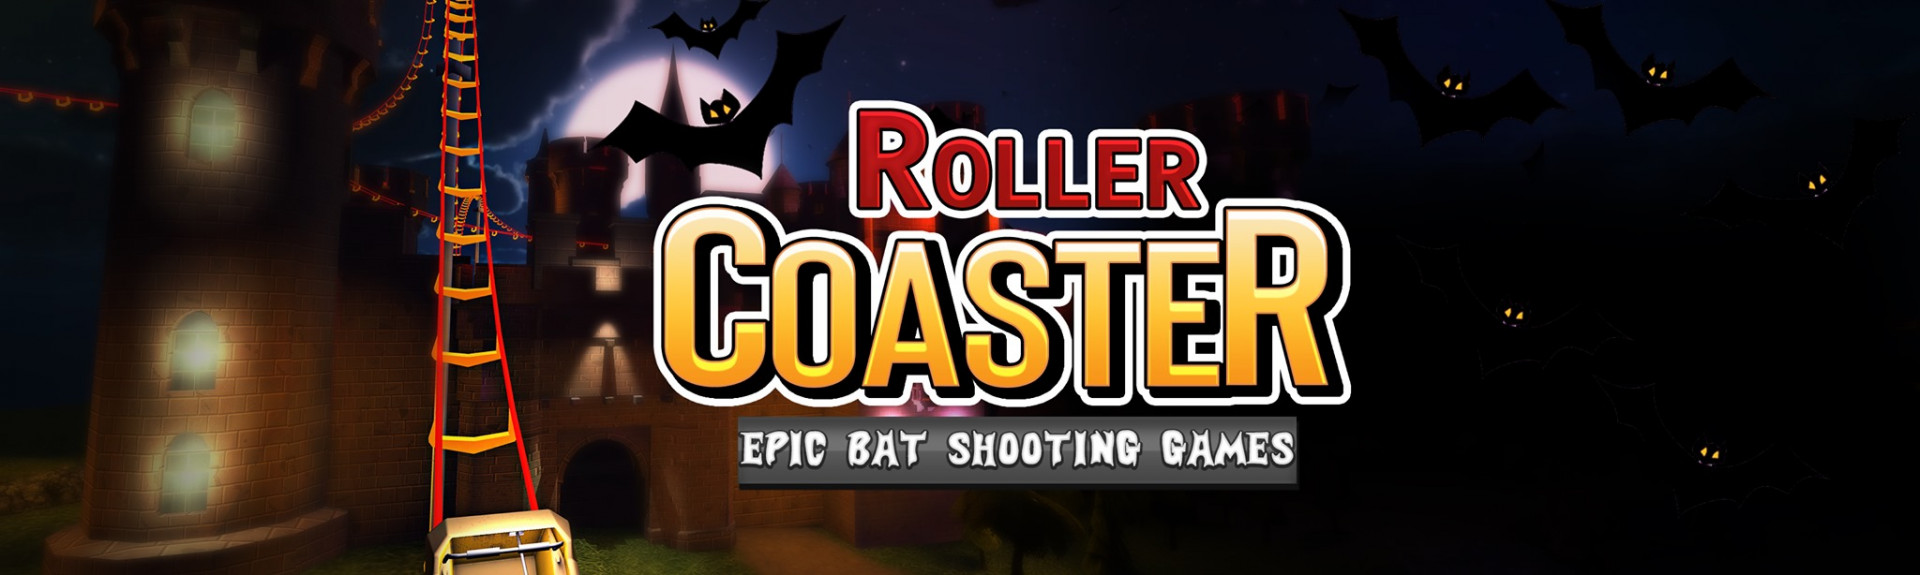 Roller Coaster - Epic Bat Shooting Game